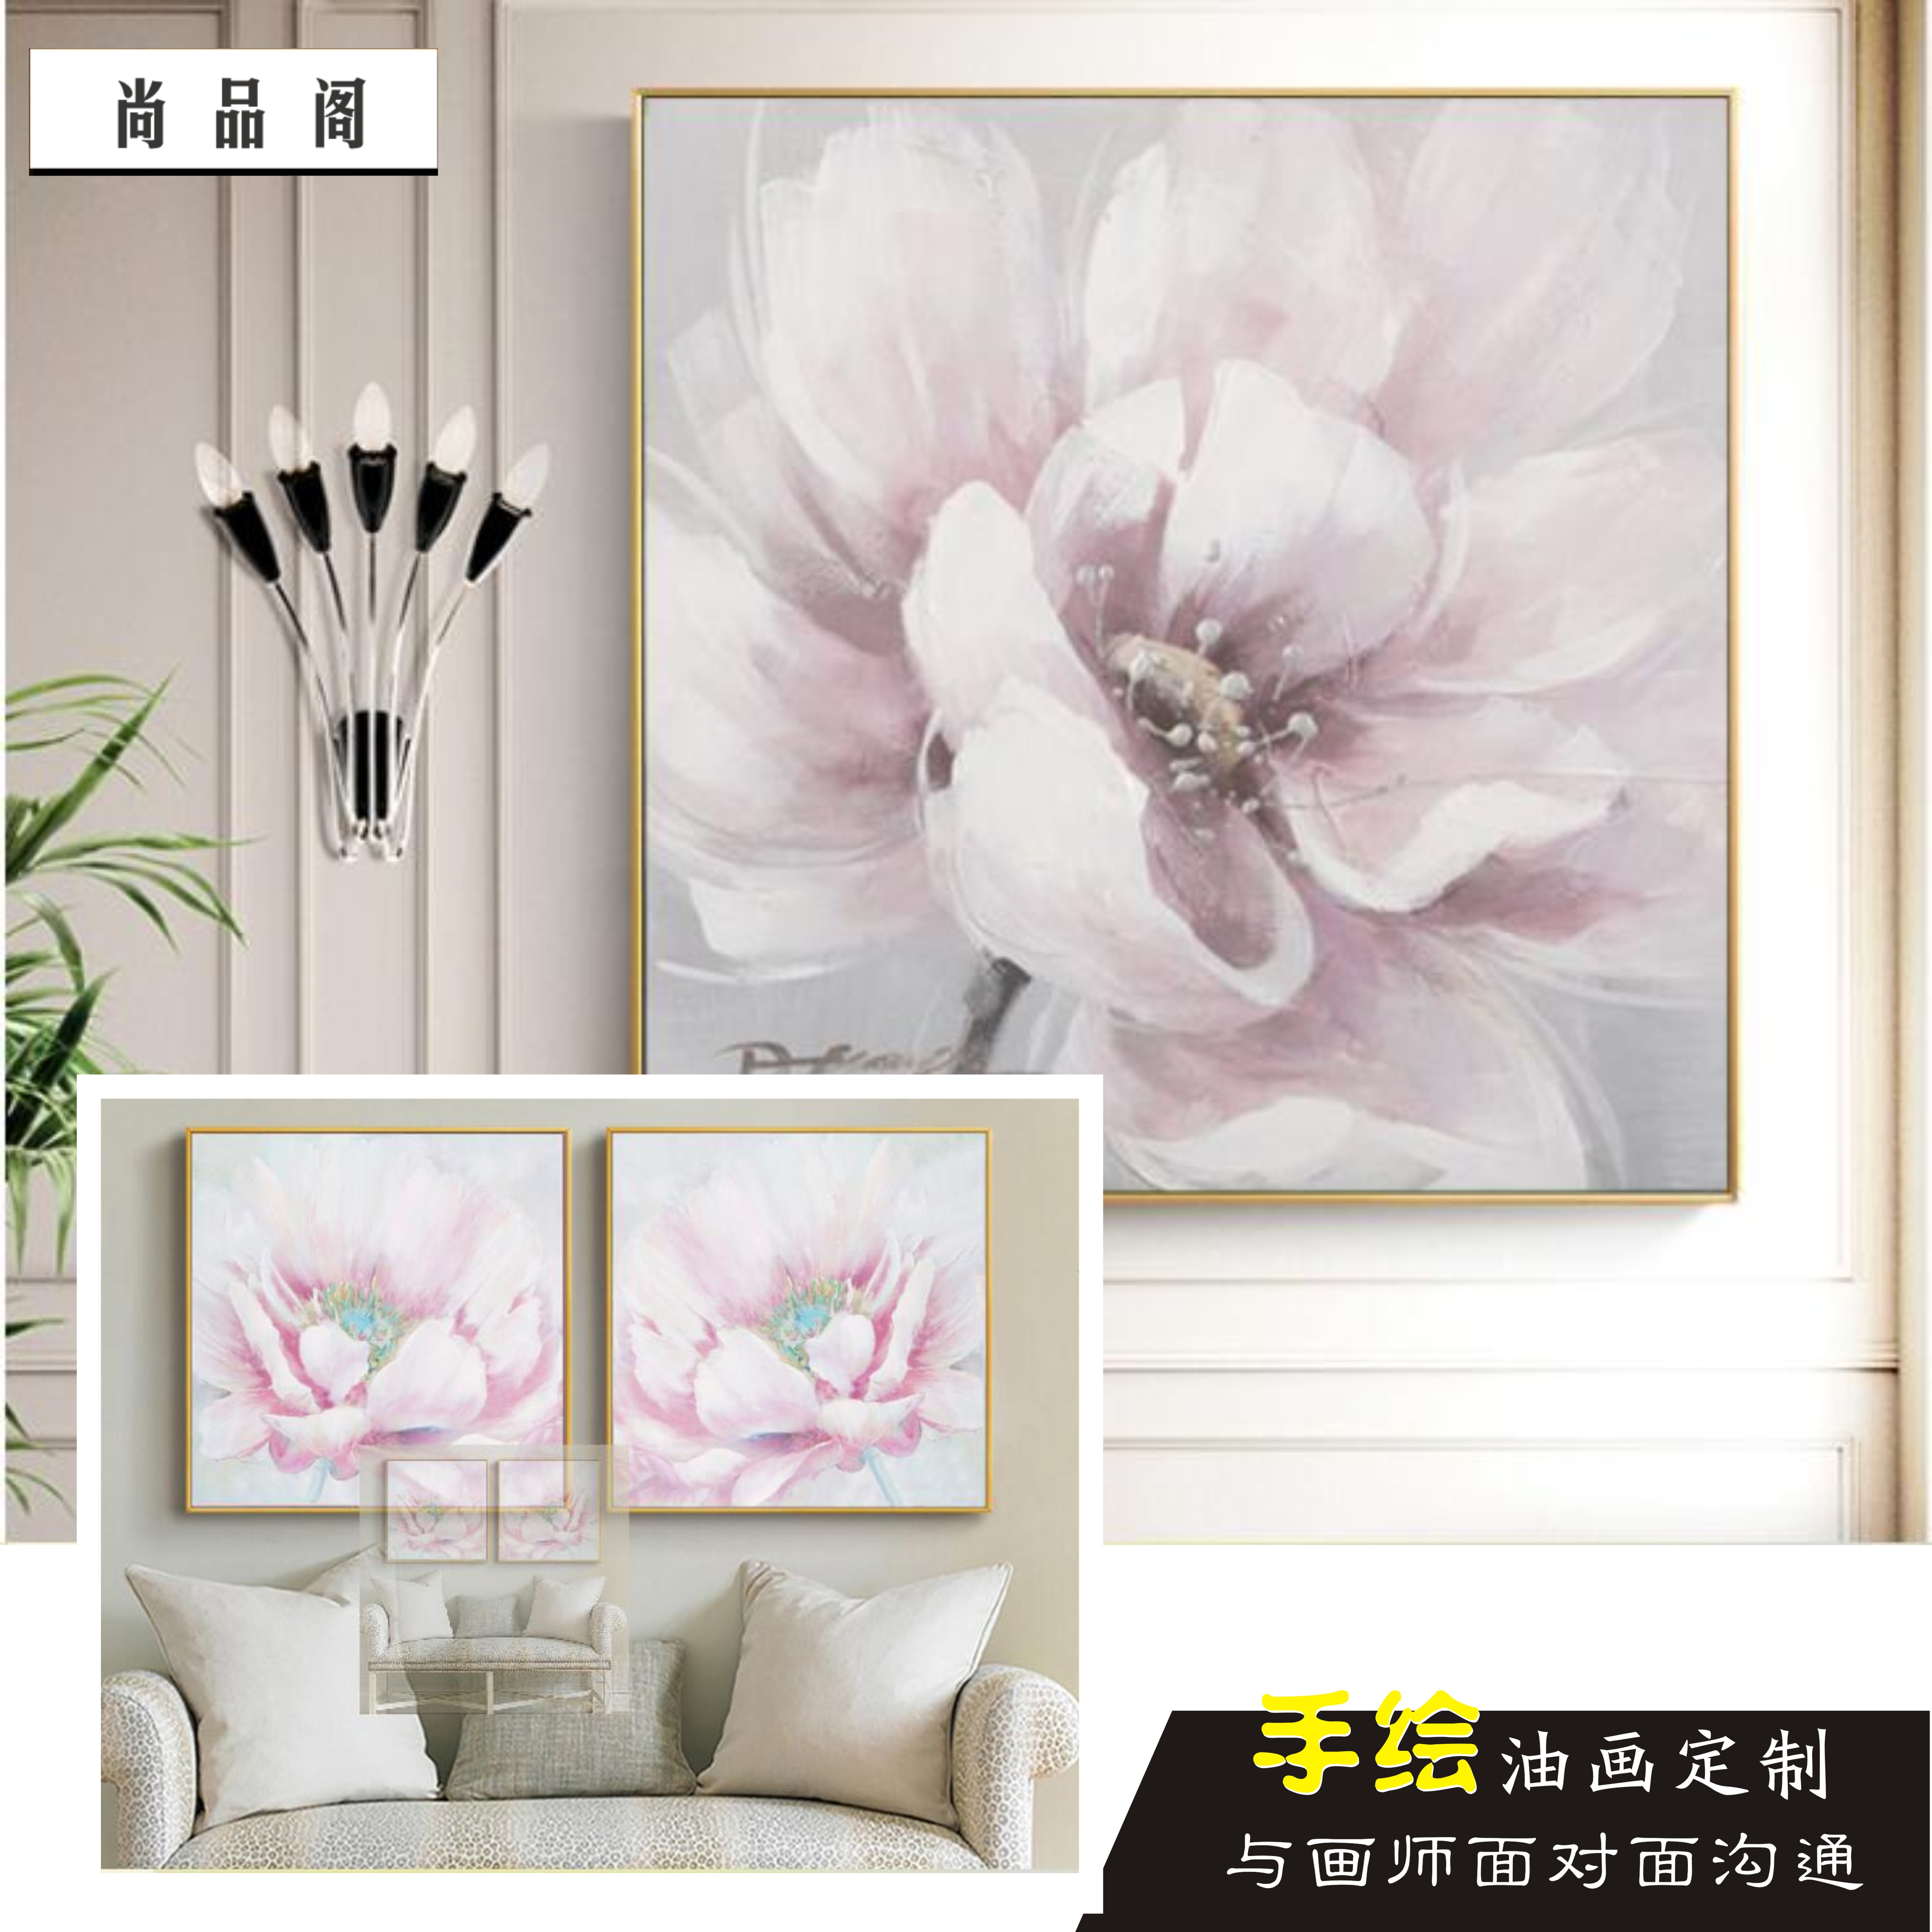 花朵静物纯手绘挂画粉色牡丹花油画正方形壁画餐厅餐厅装饰画卧室图片